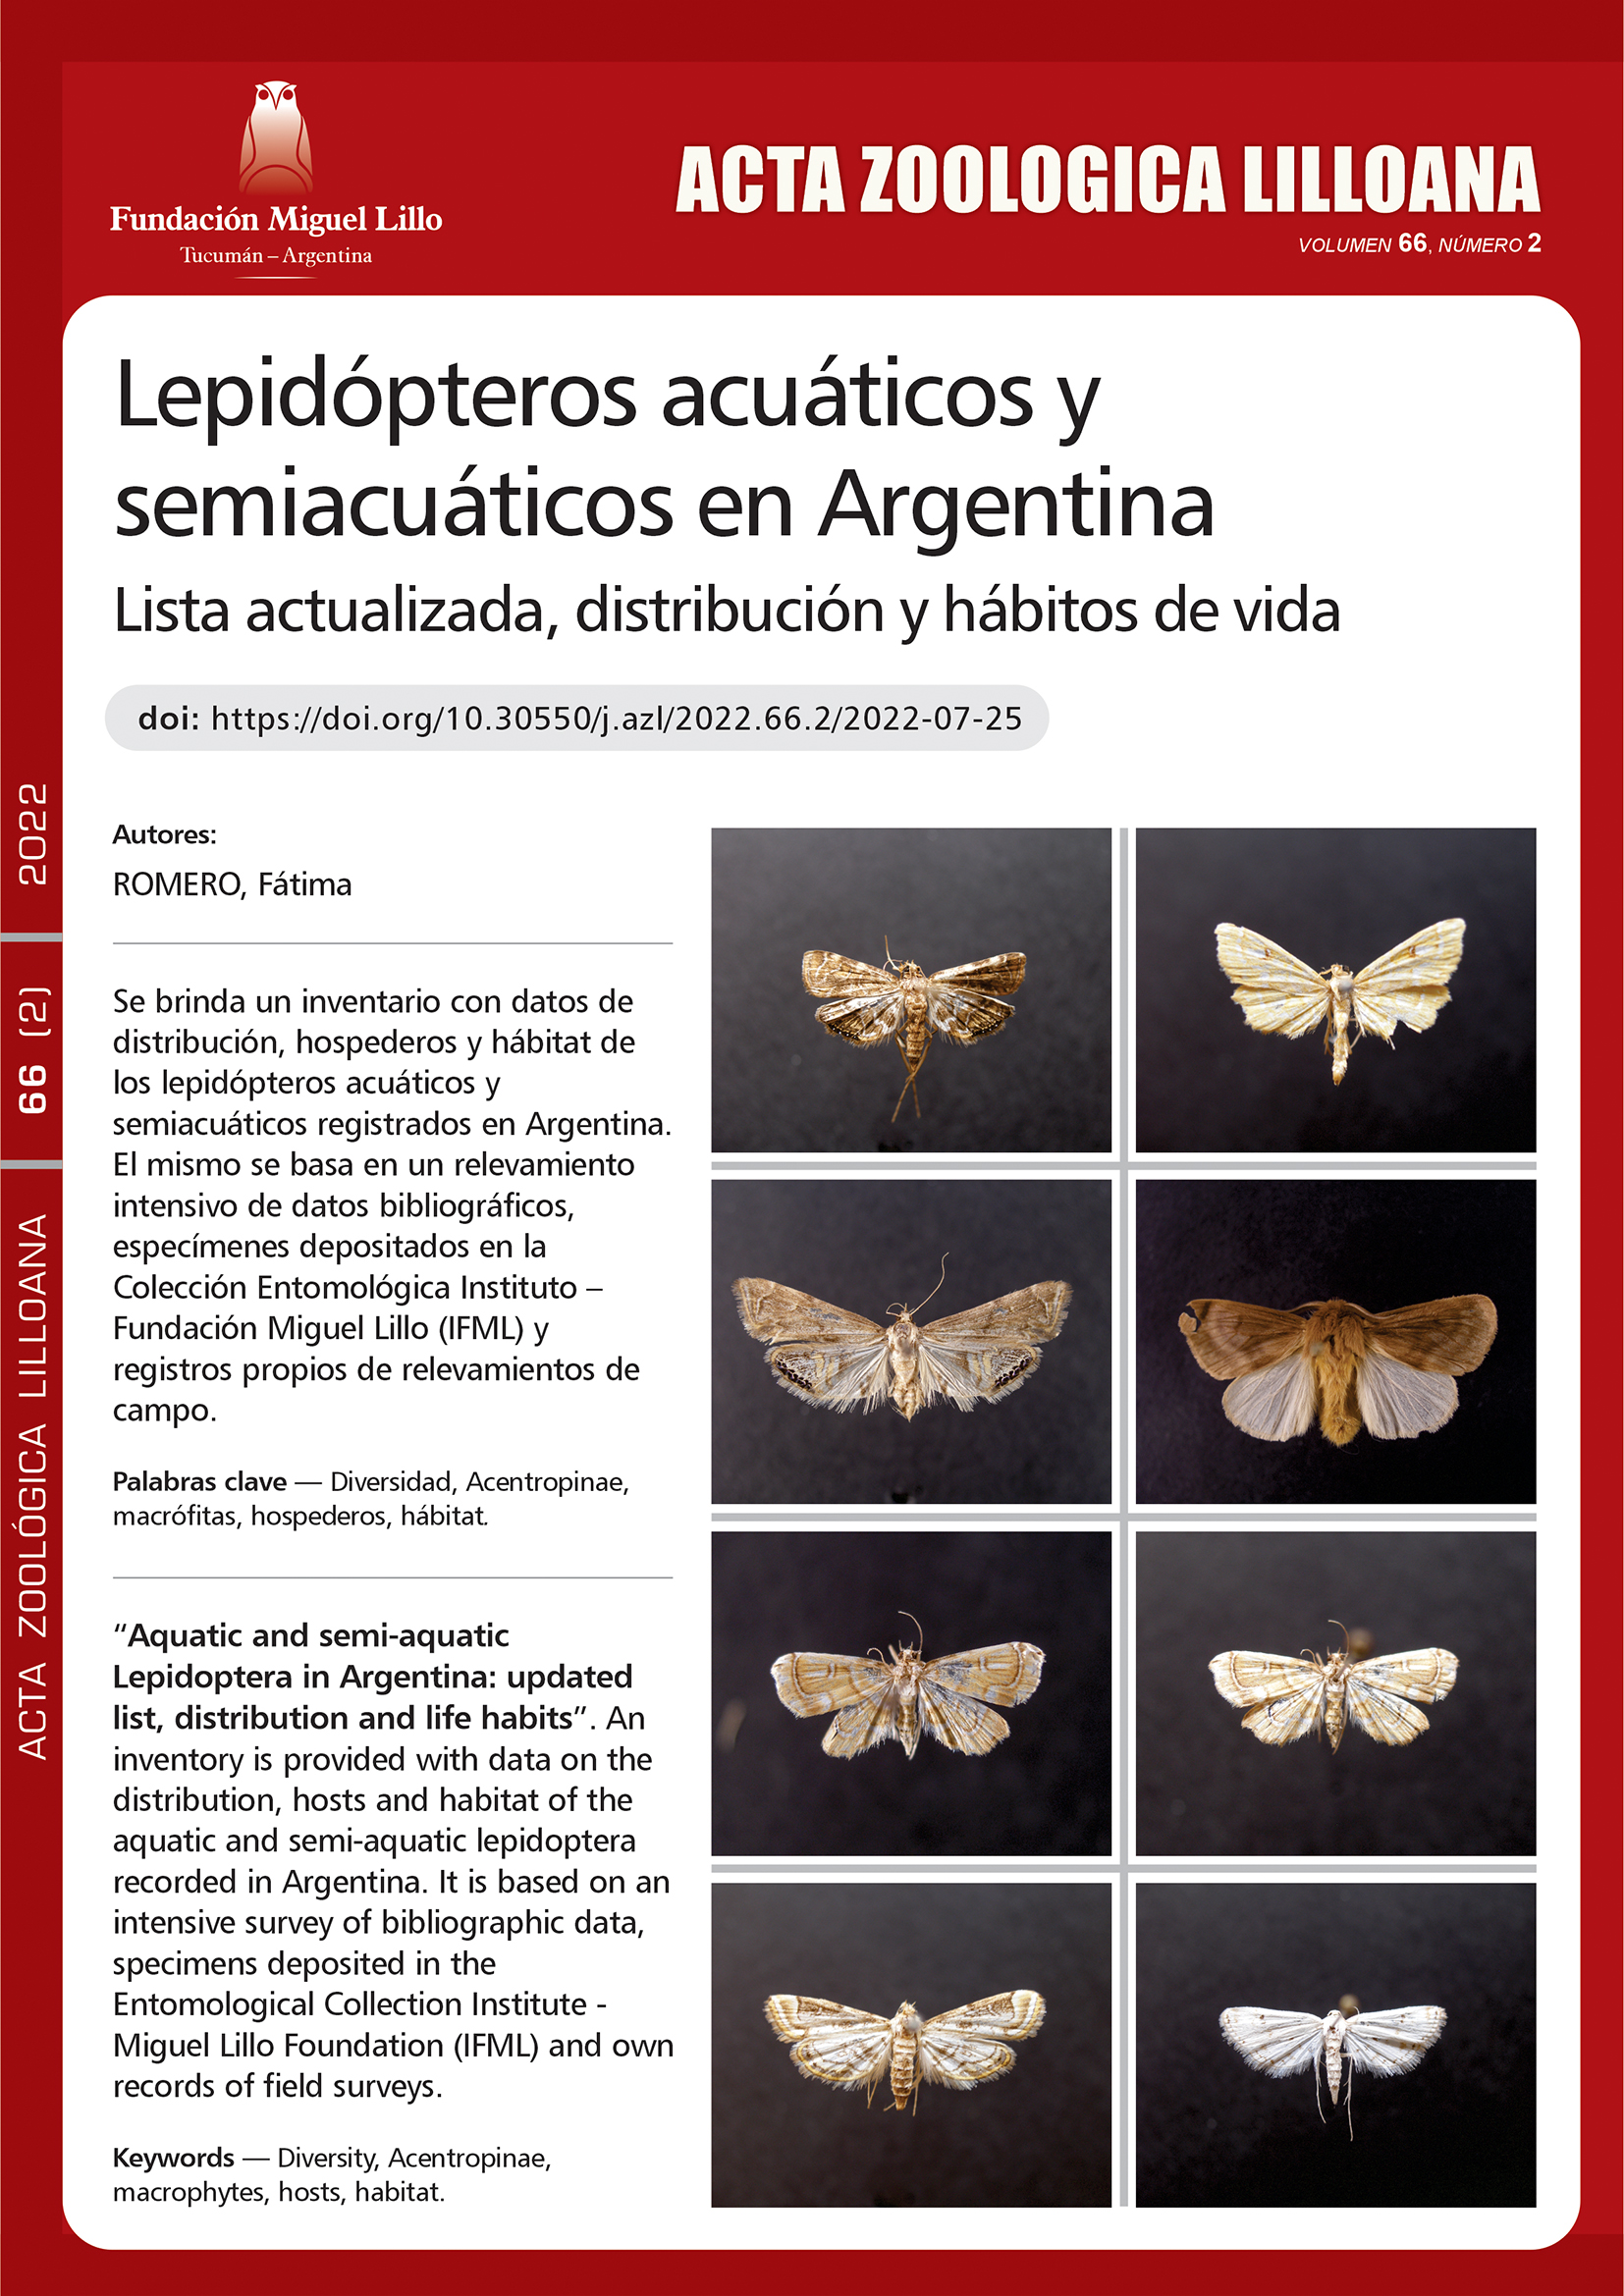 Lepidópteros acuáticos y semiacuáticos en Argentina: lista actualizada, distribución